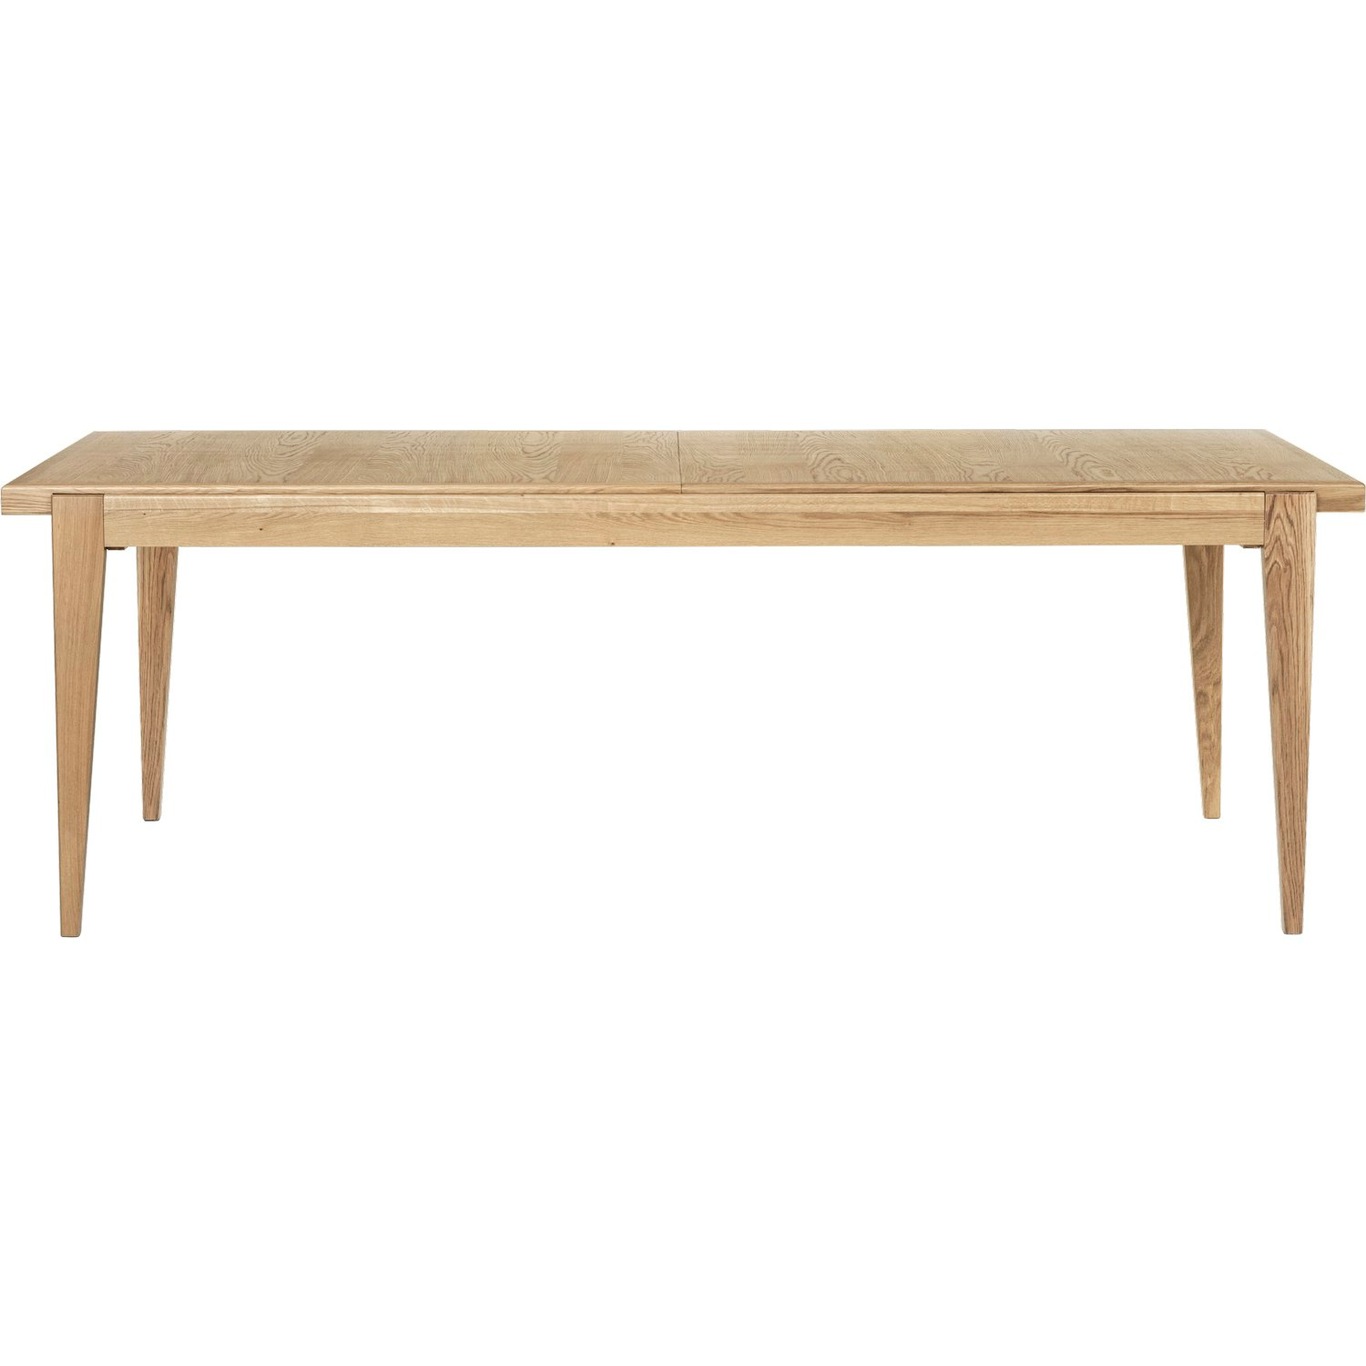 S-Table Eettafel Uitrekbaar 95x220 cm, Eiken